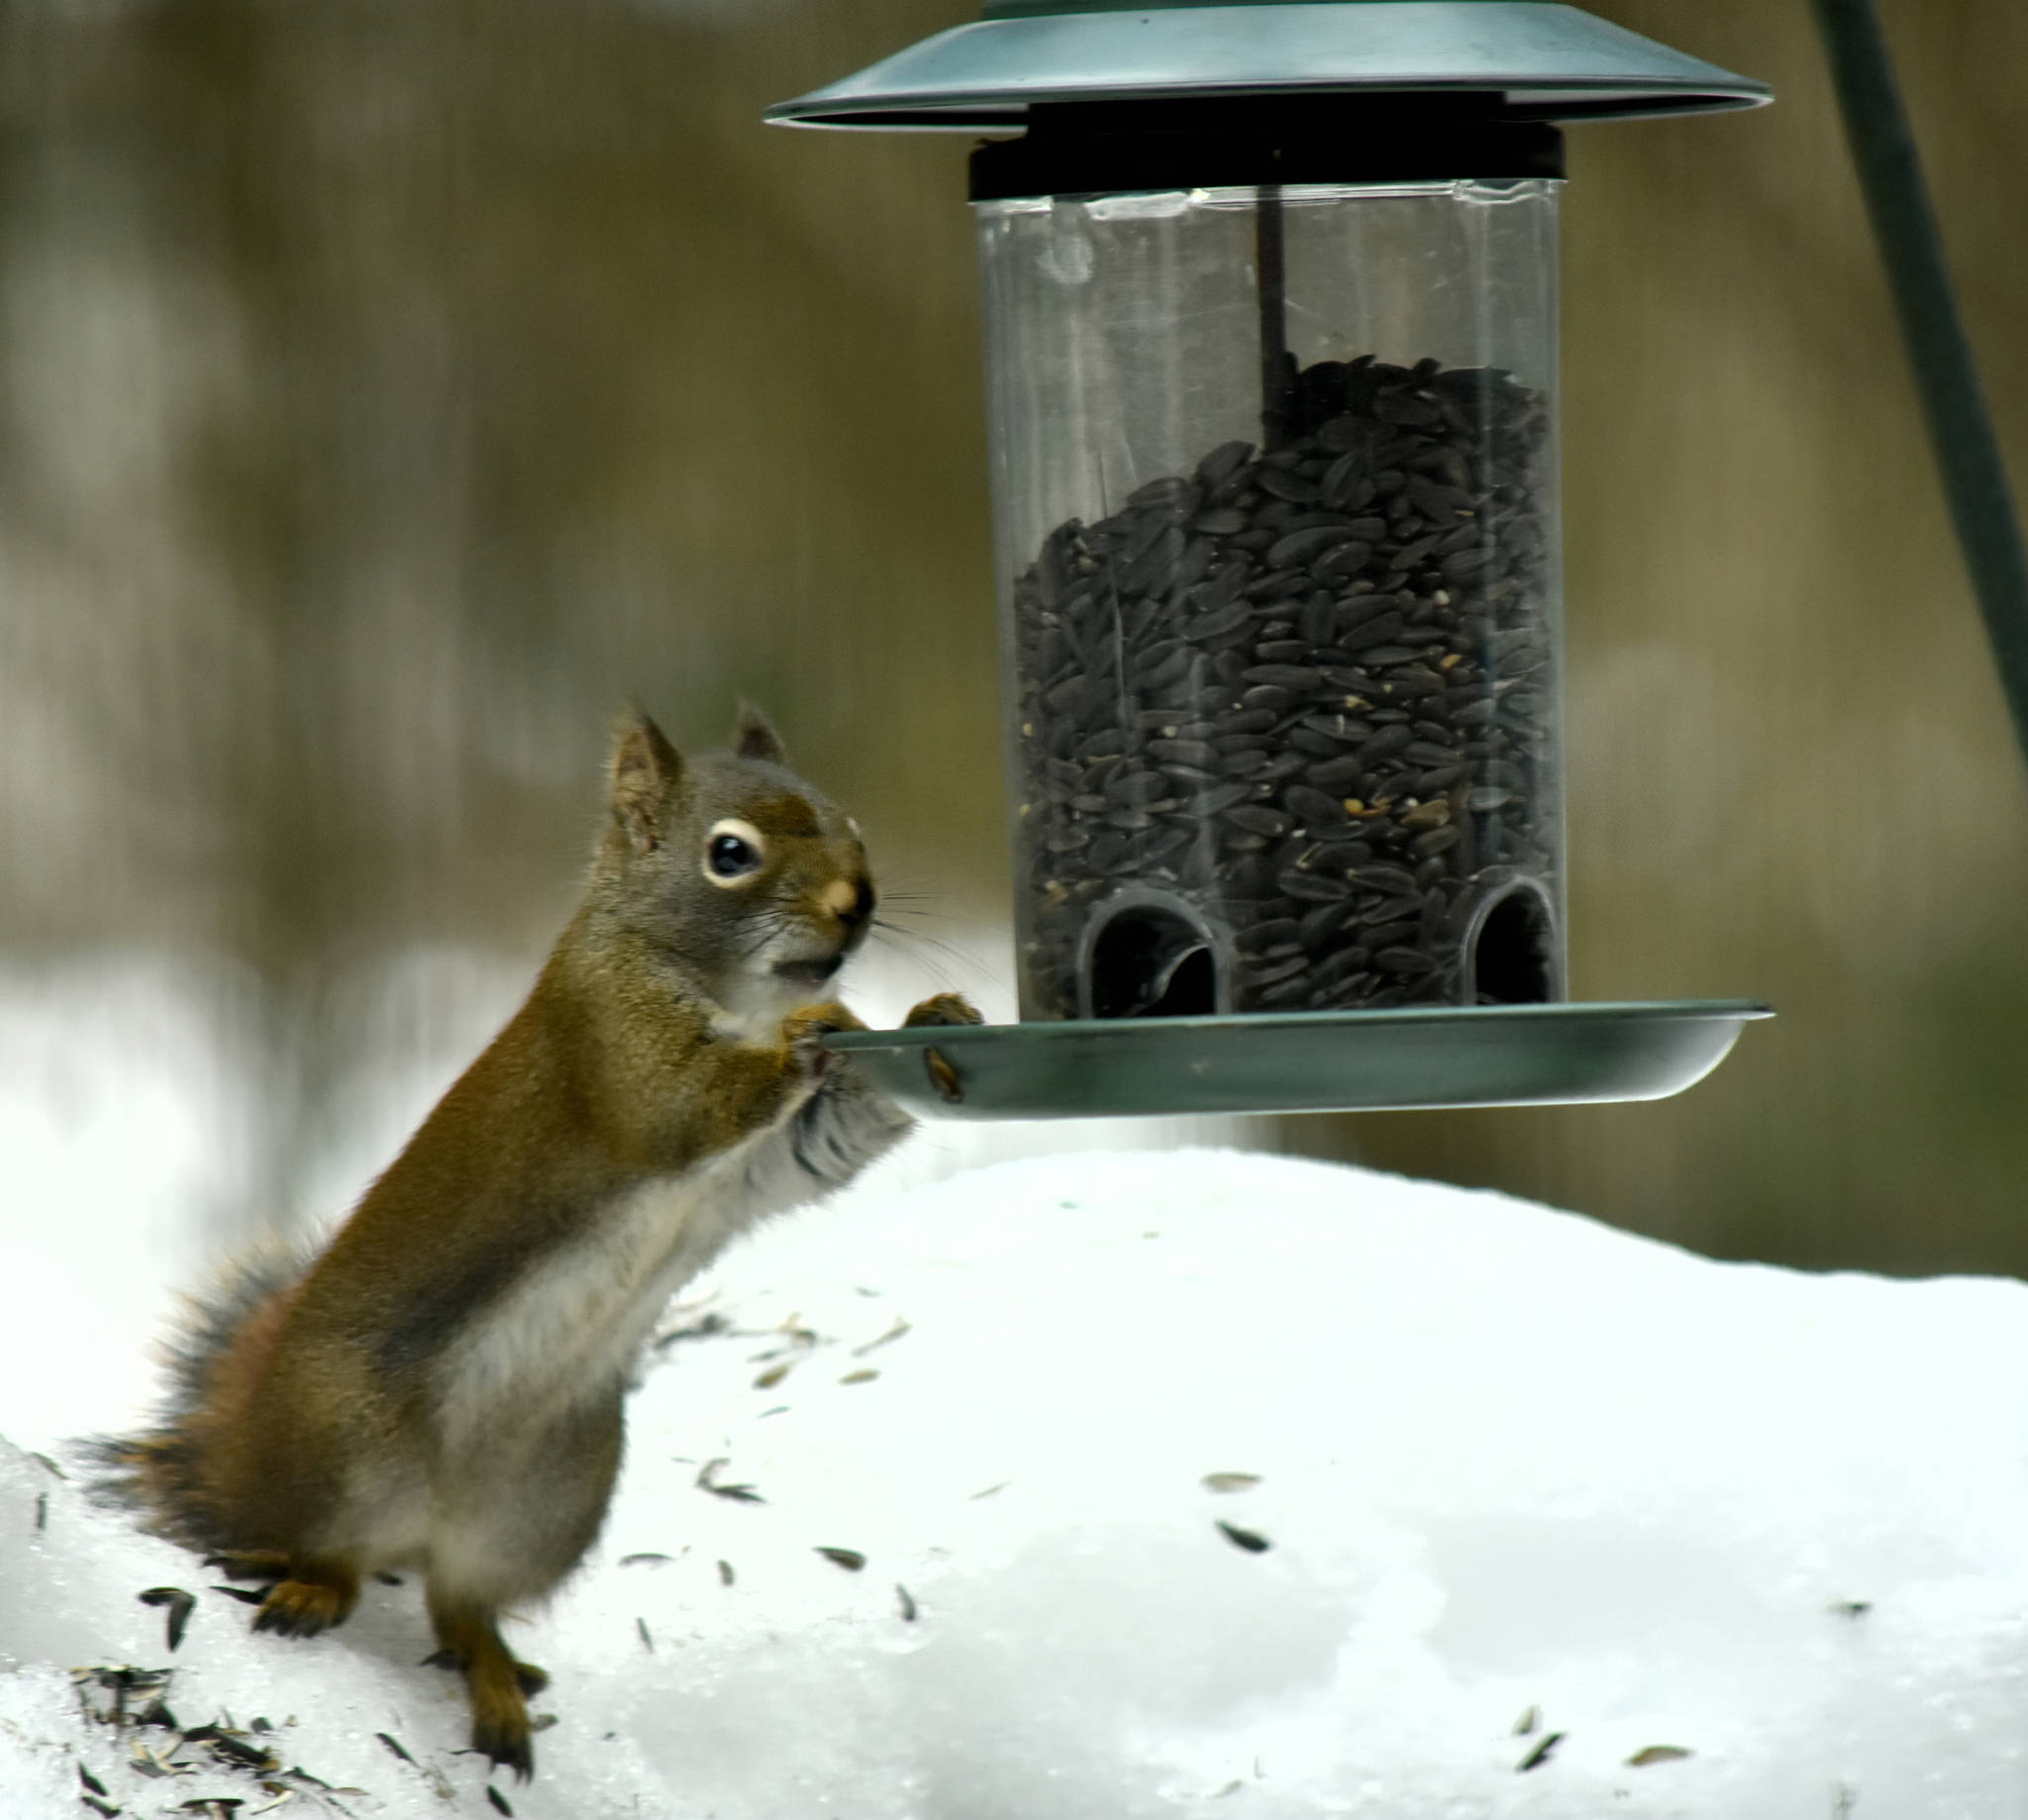 A red squirrel raids a bird feeder on March 2, 2019. (Courtesy Photo | Linda Shaw)